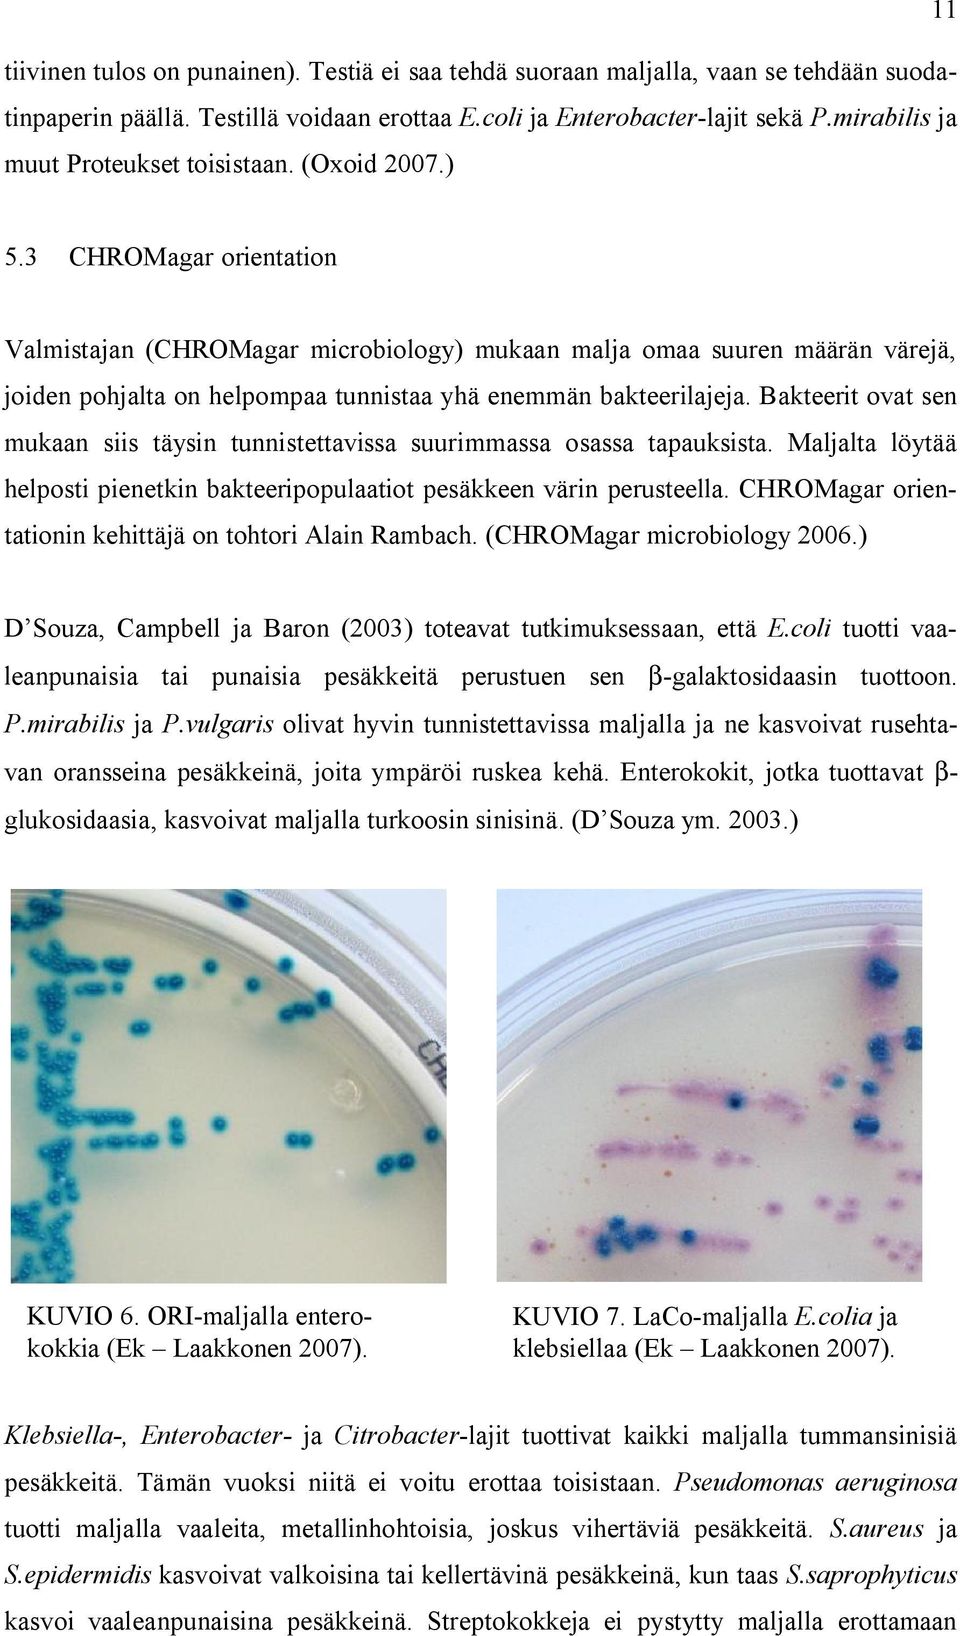 3 CHROMagar orientation Valmistajan (CHROMagar microbiology) mukaan malja omaa suuren määrän värejä, joiden pohjalta on helpompaa tunnistaa yhä enemmän bakteerilajeja.